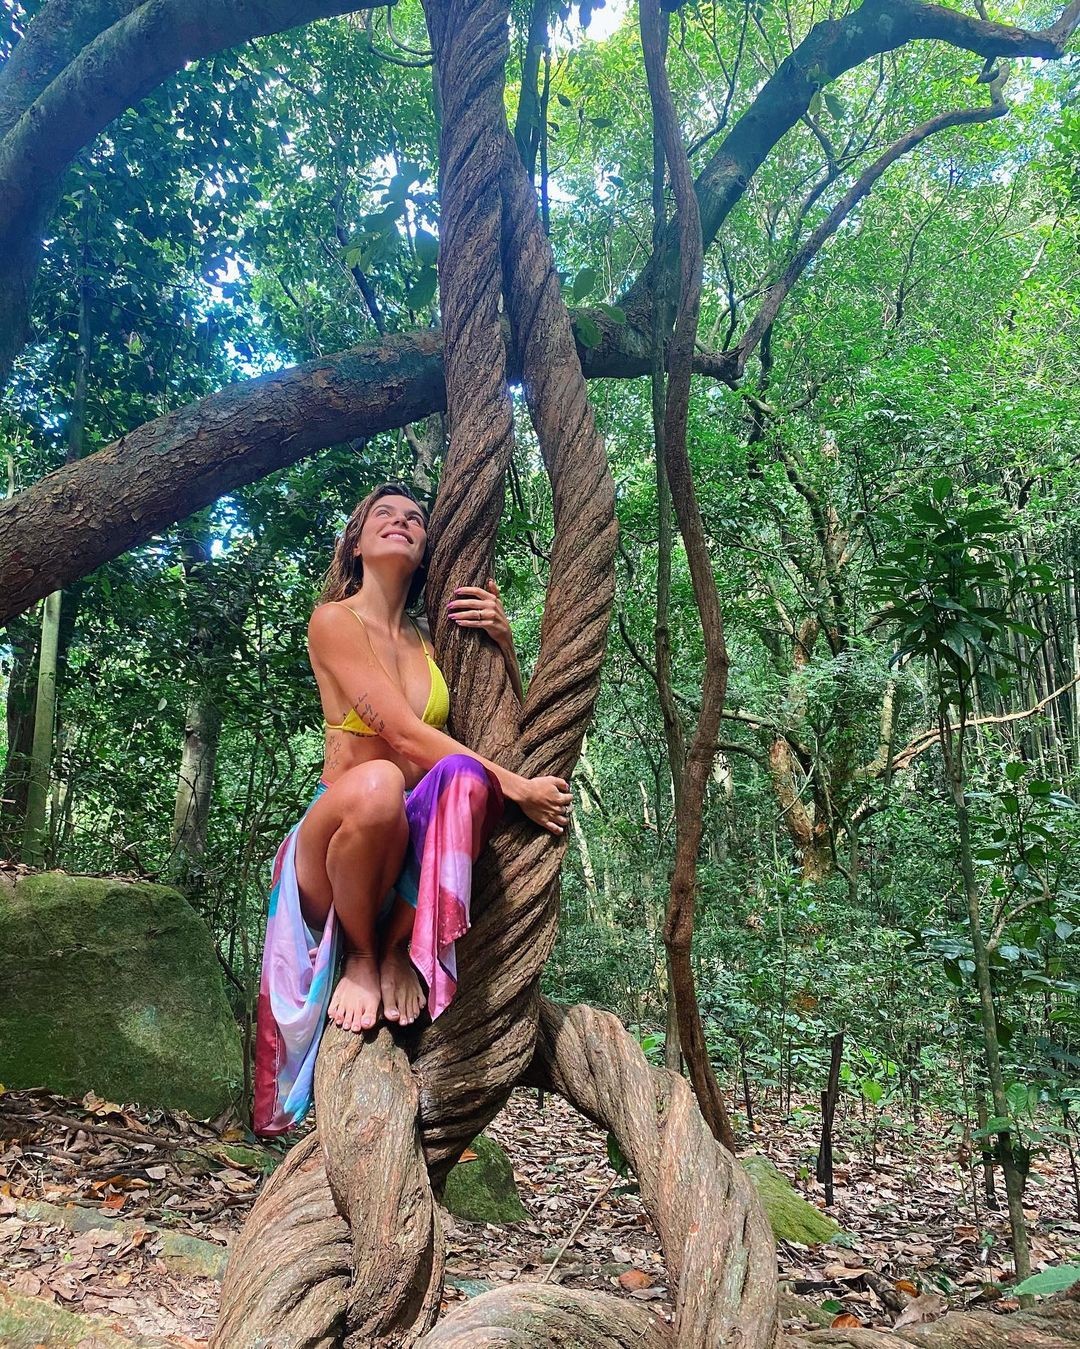 Conexão natural: Mariana Goldfarb aparece feliz em clique abraçada com árvore (Foto: Reprodução/Instagram)